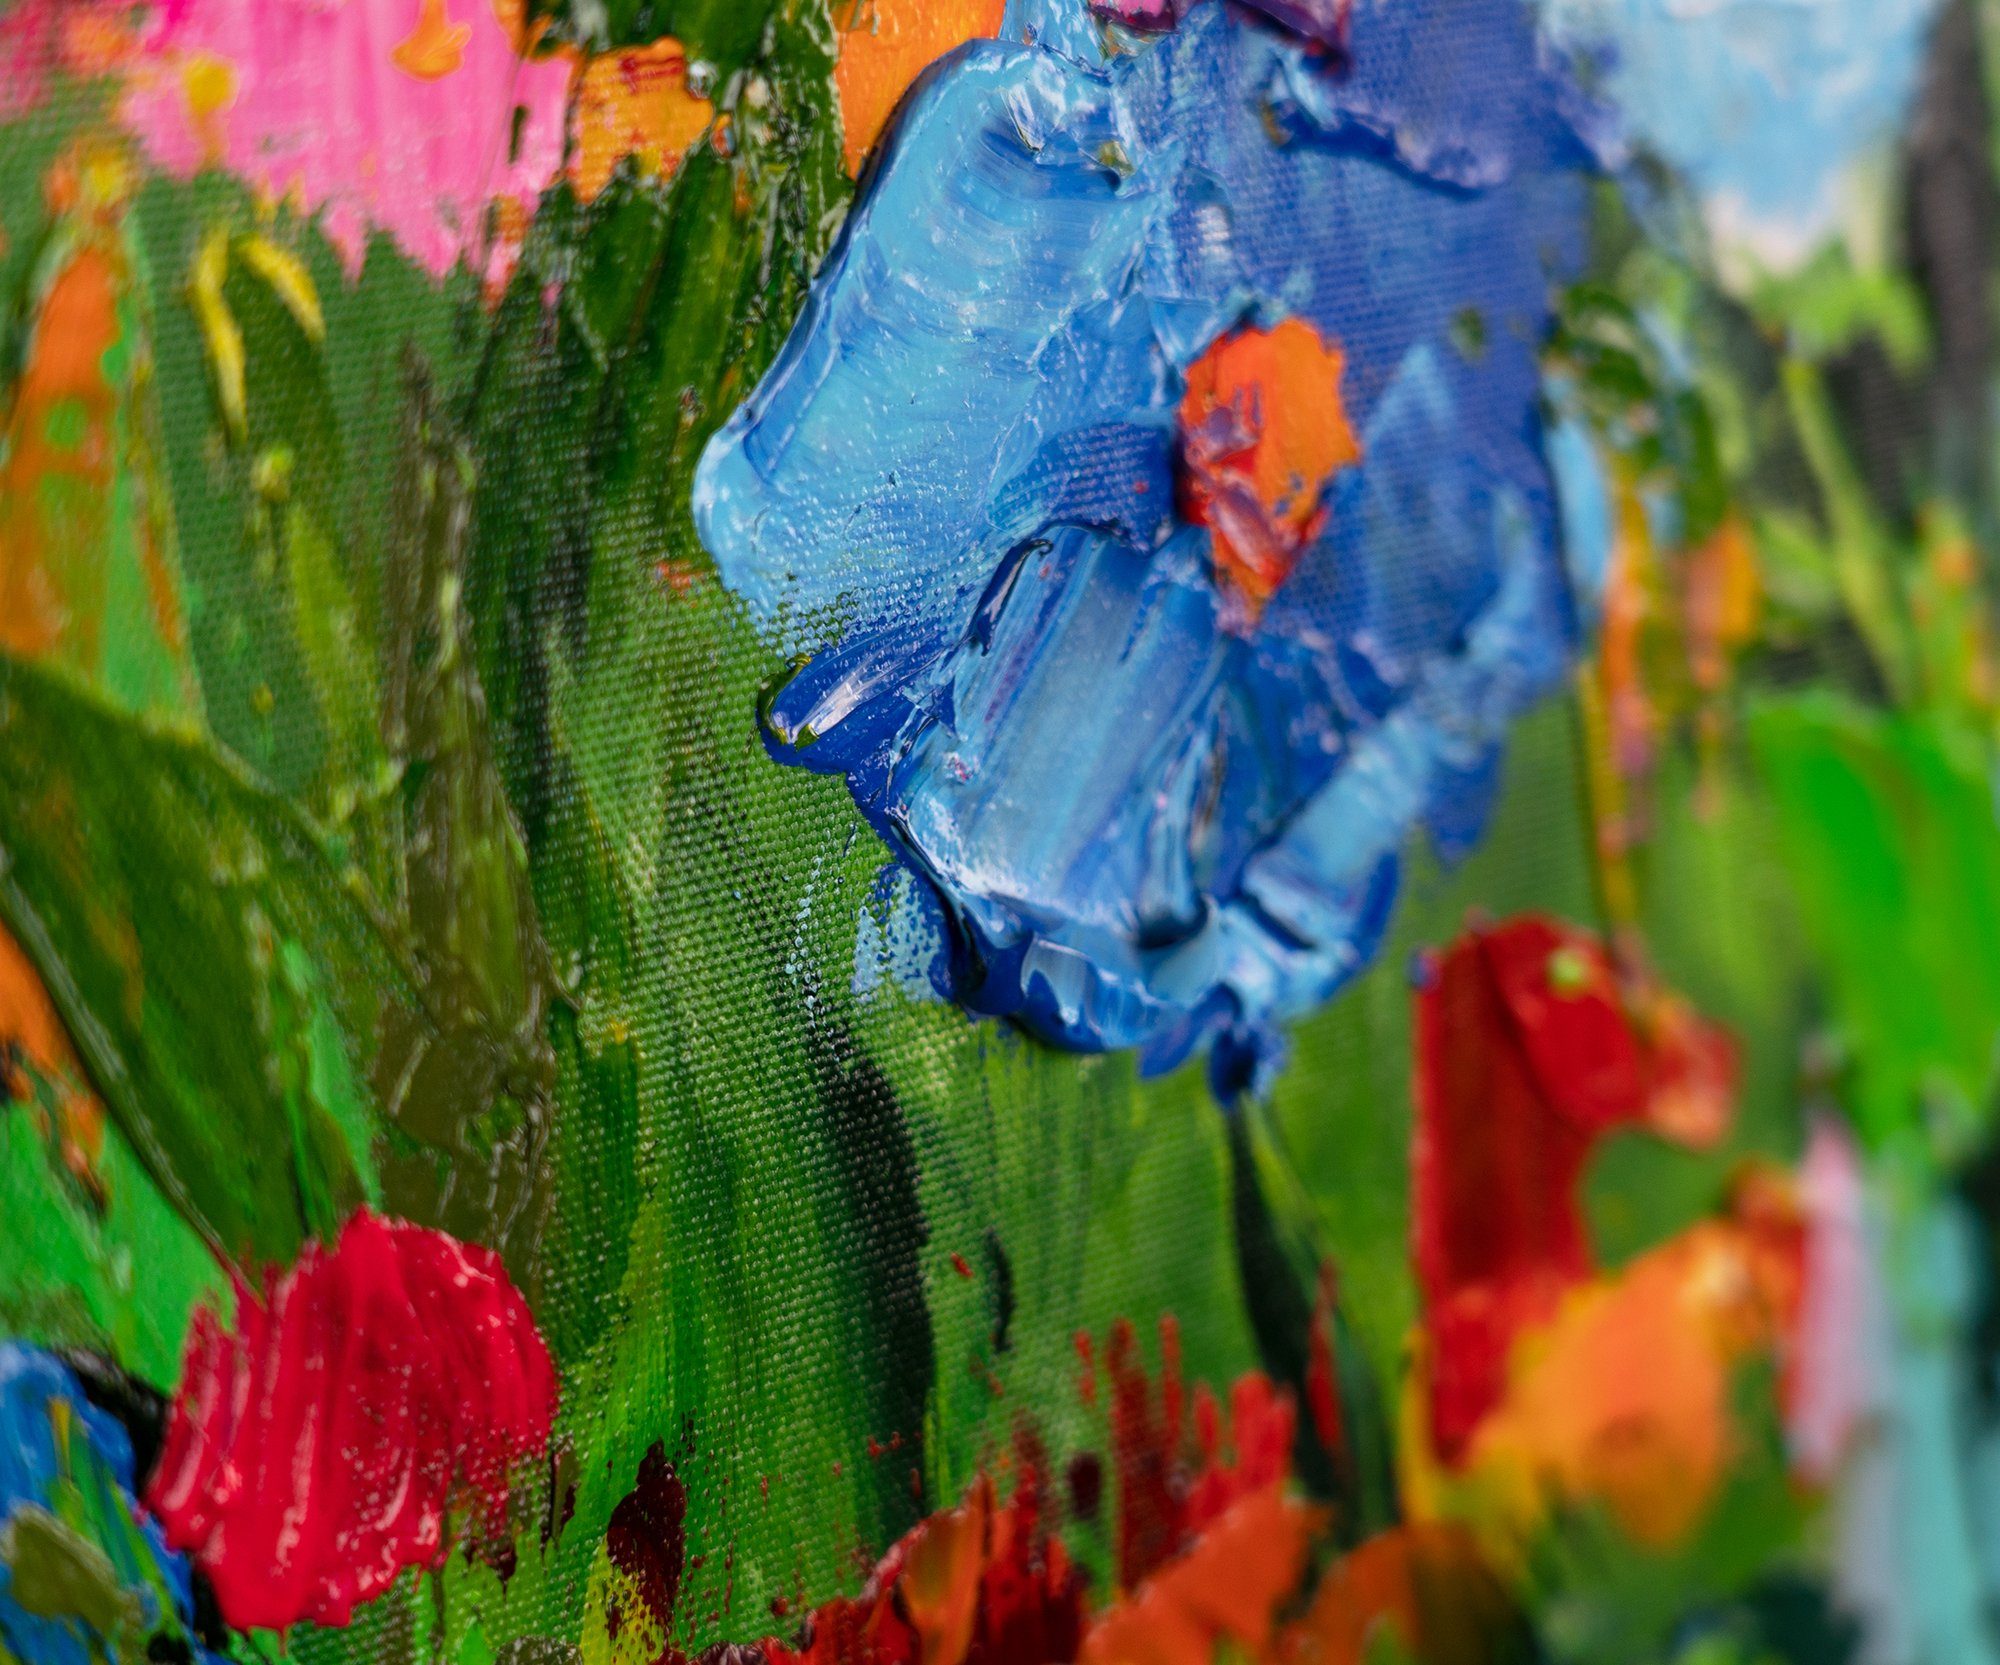 Farben, Gemälde Blumige Rosa in Mit YS-Art Rahmen Blumen